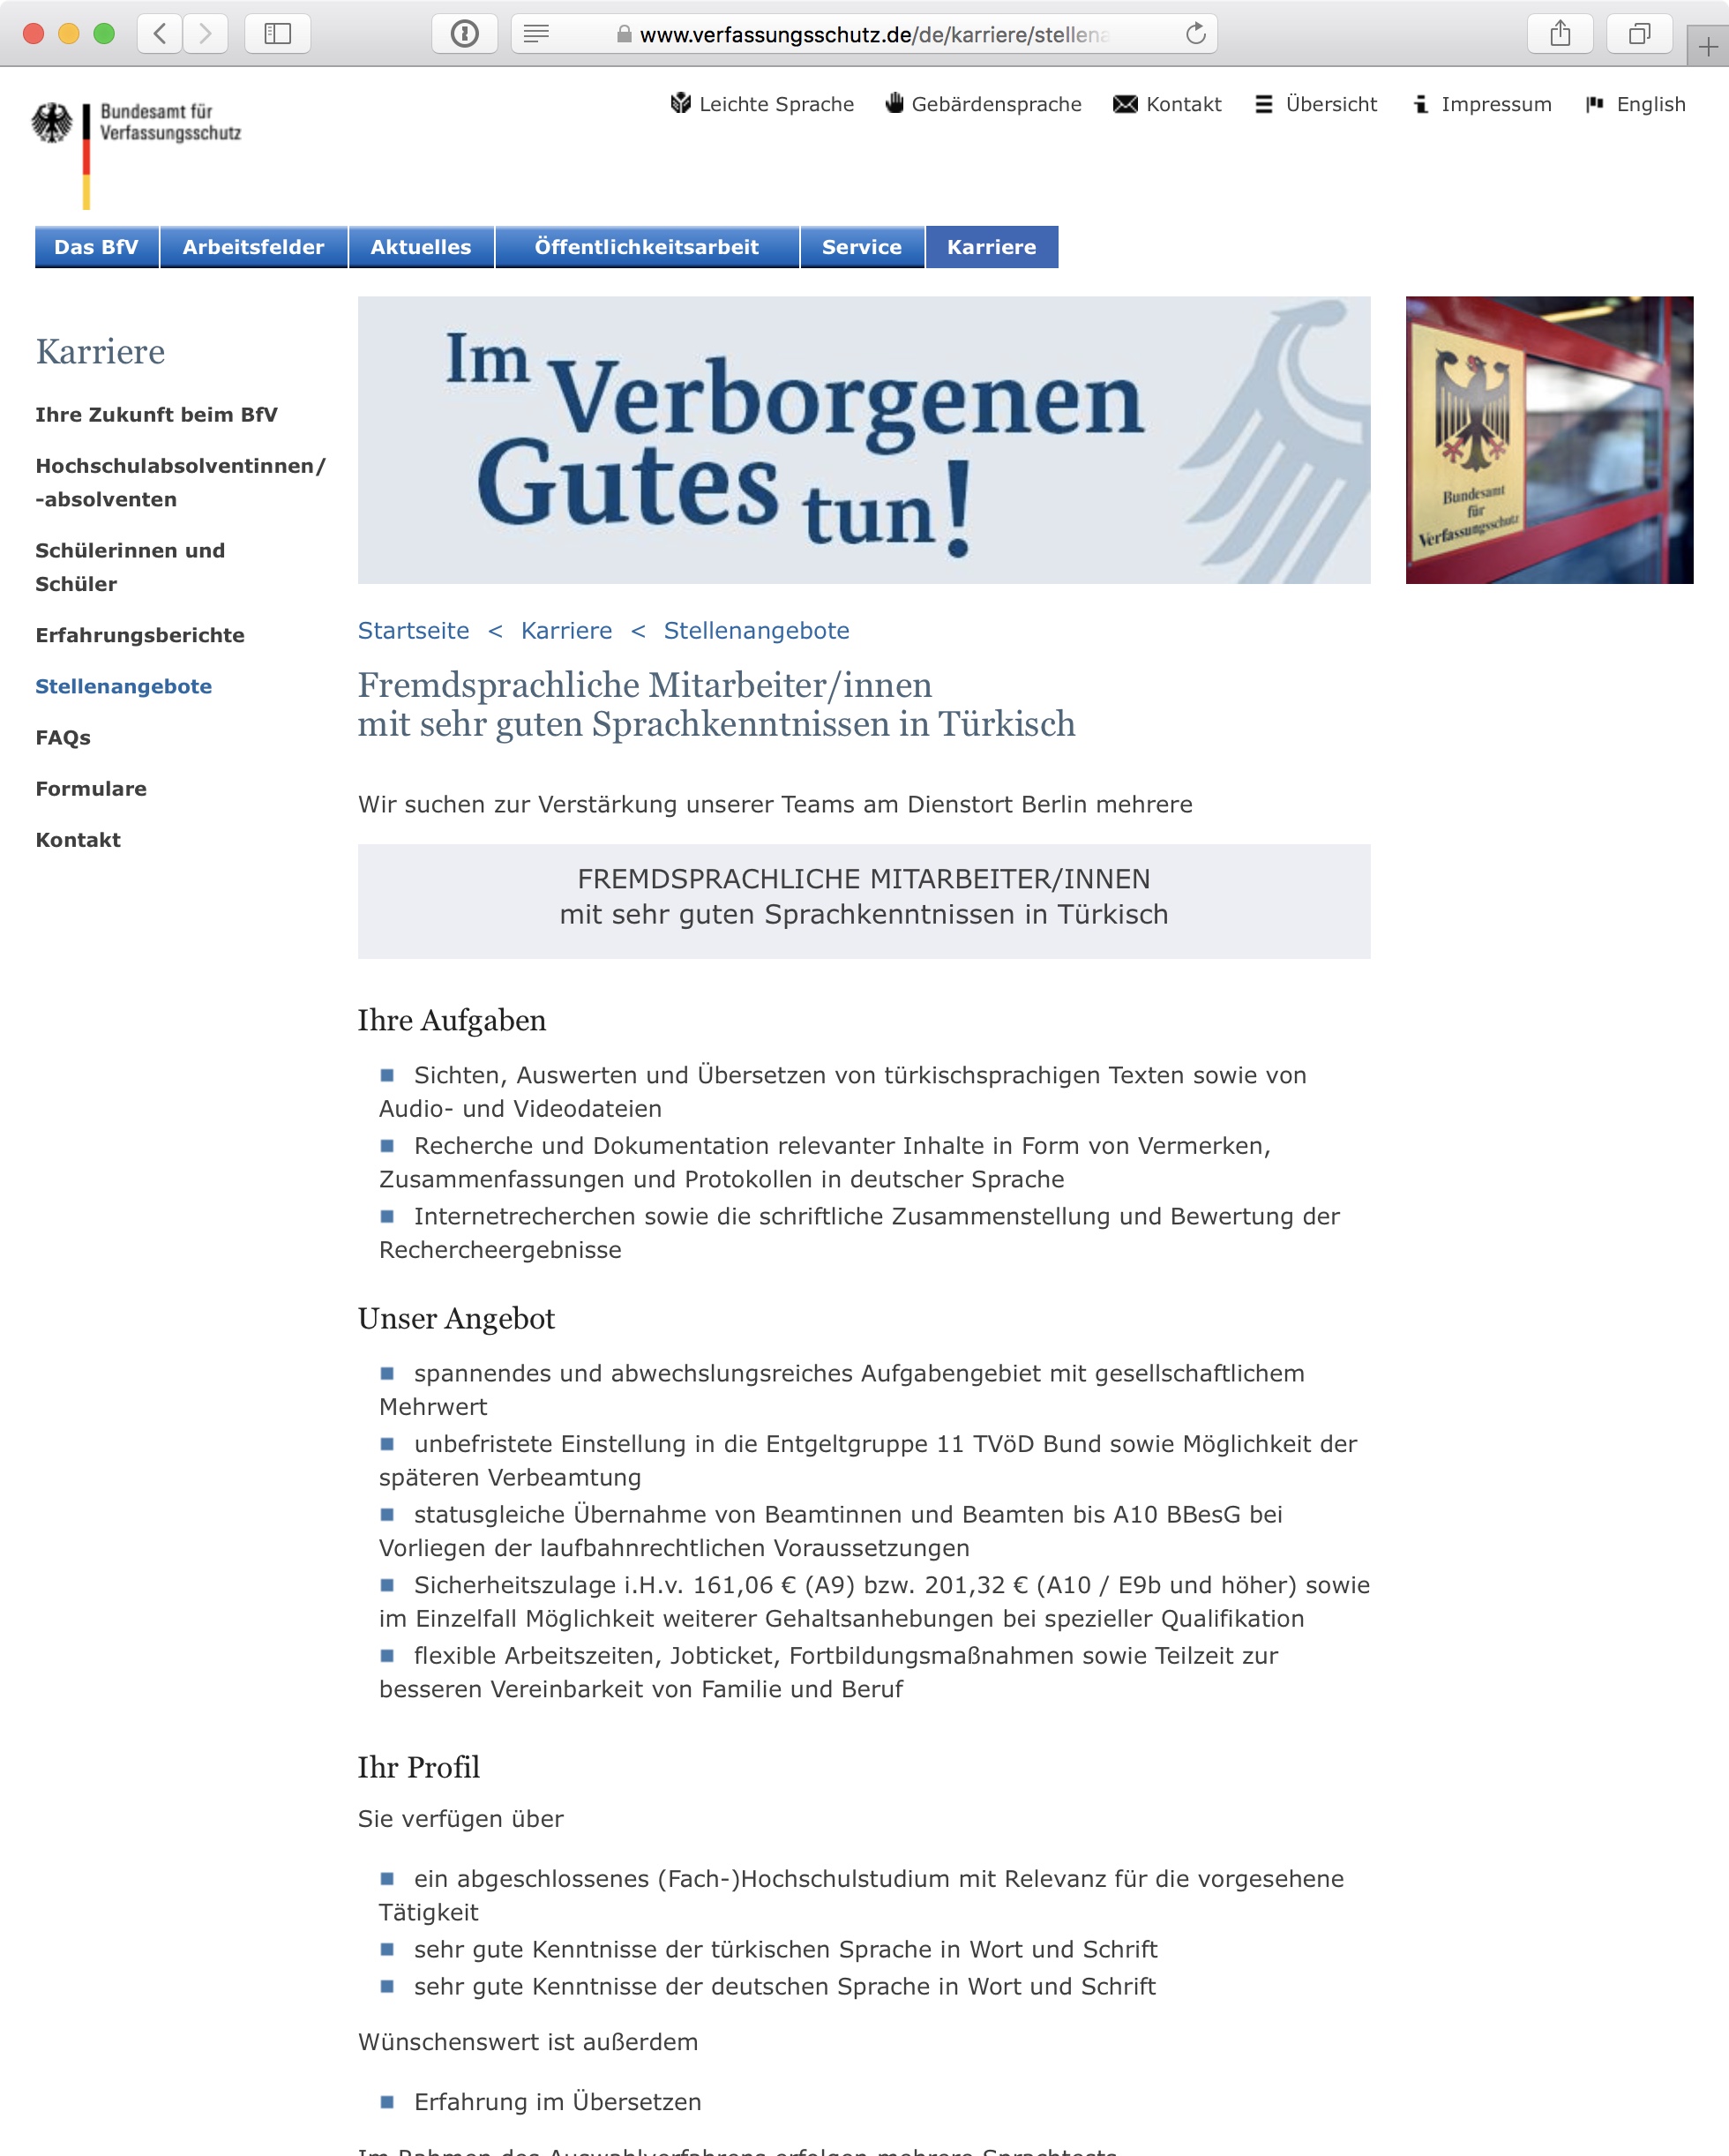 Screenshot: Online-Stellenausschreibung beim Bundesamt für Verfassungsschutz (BfV) in Deutschland